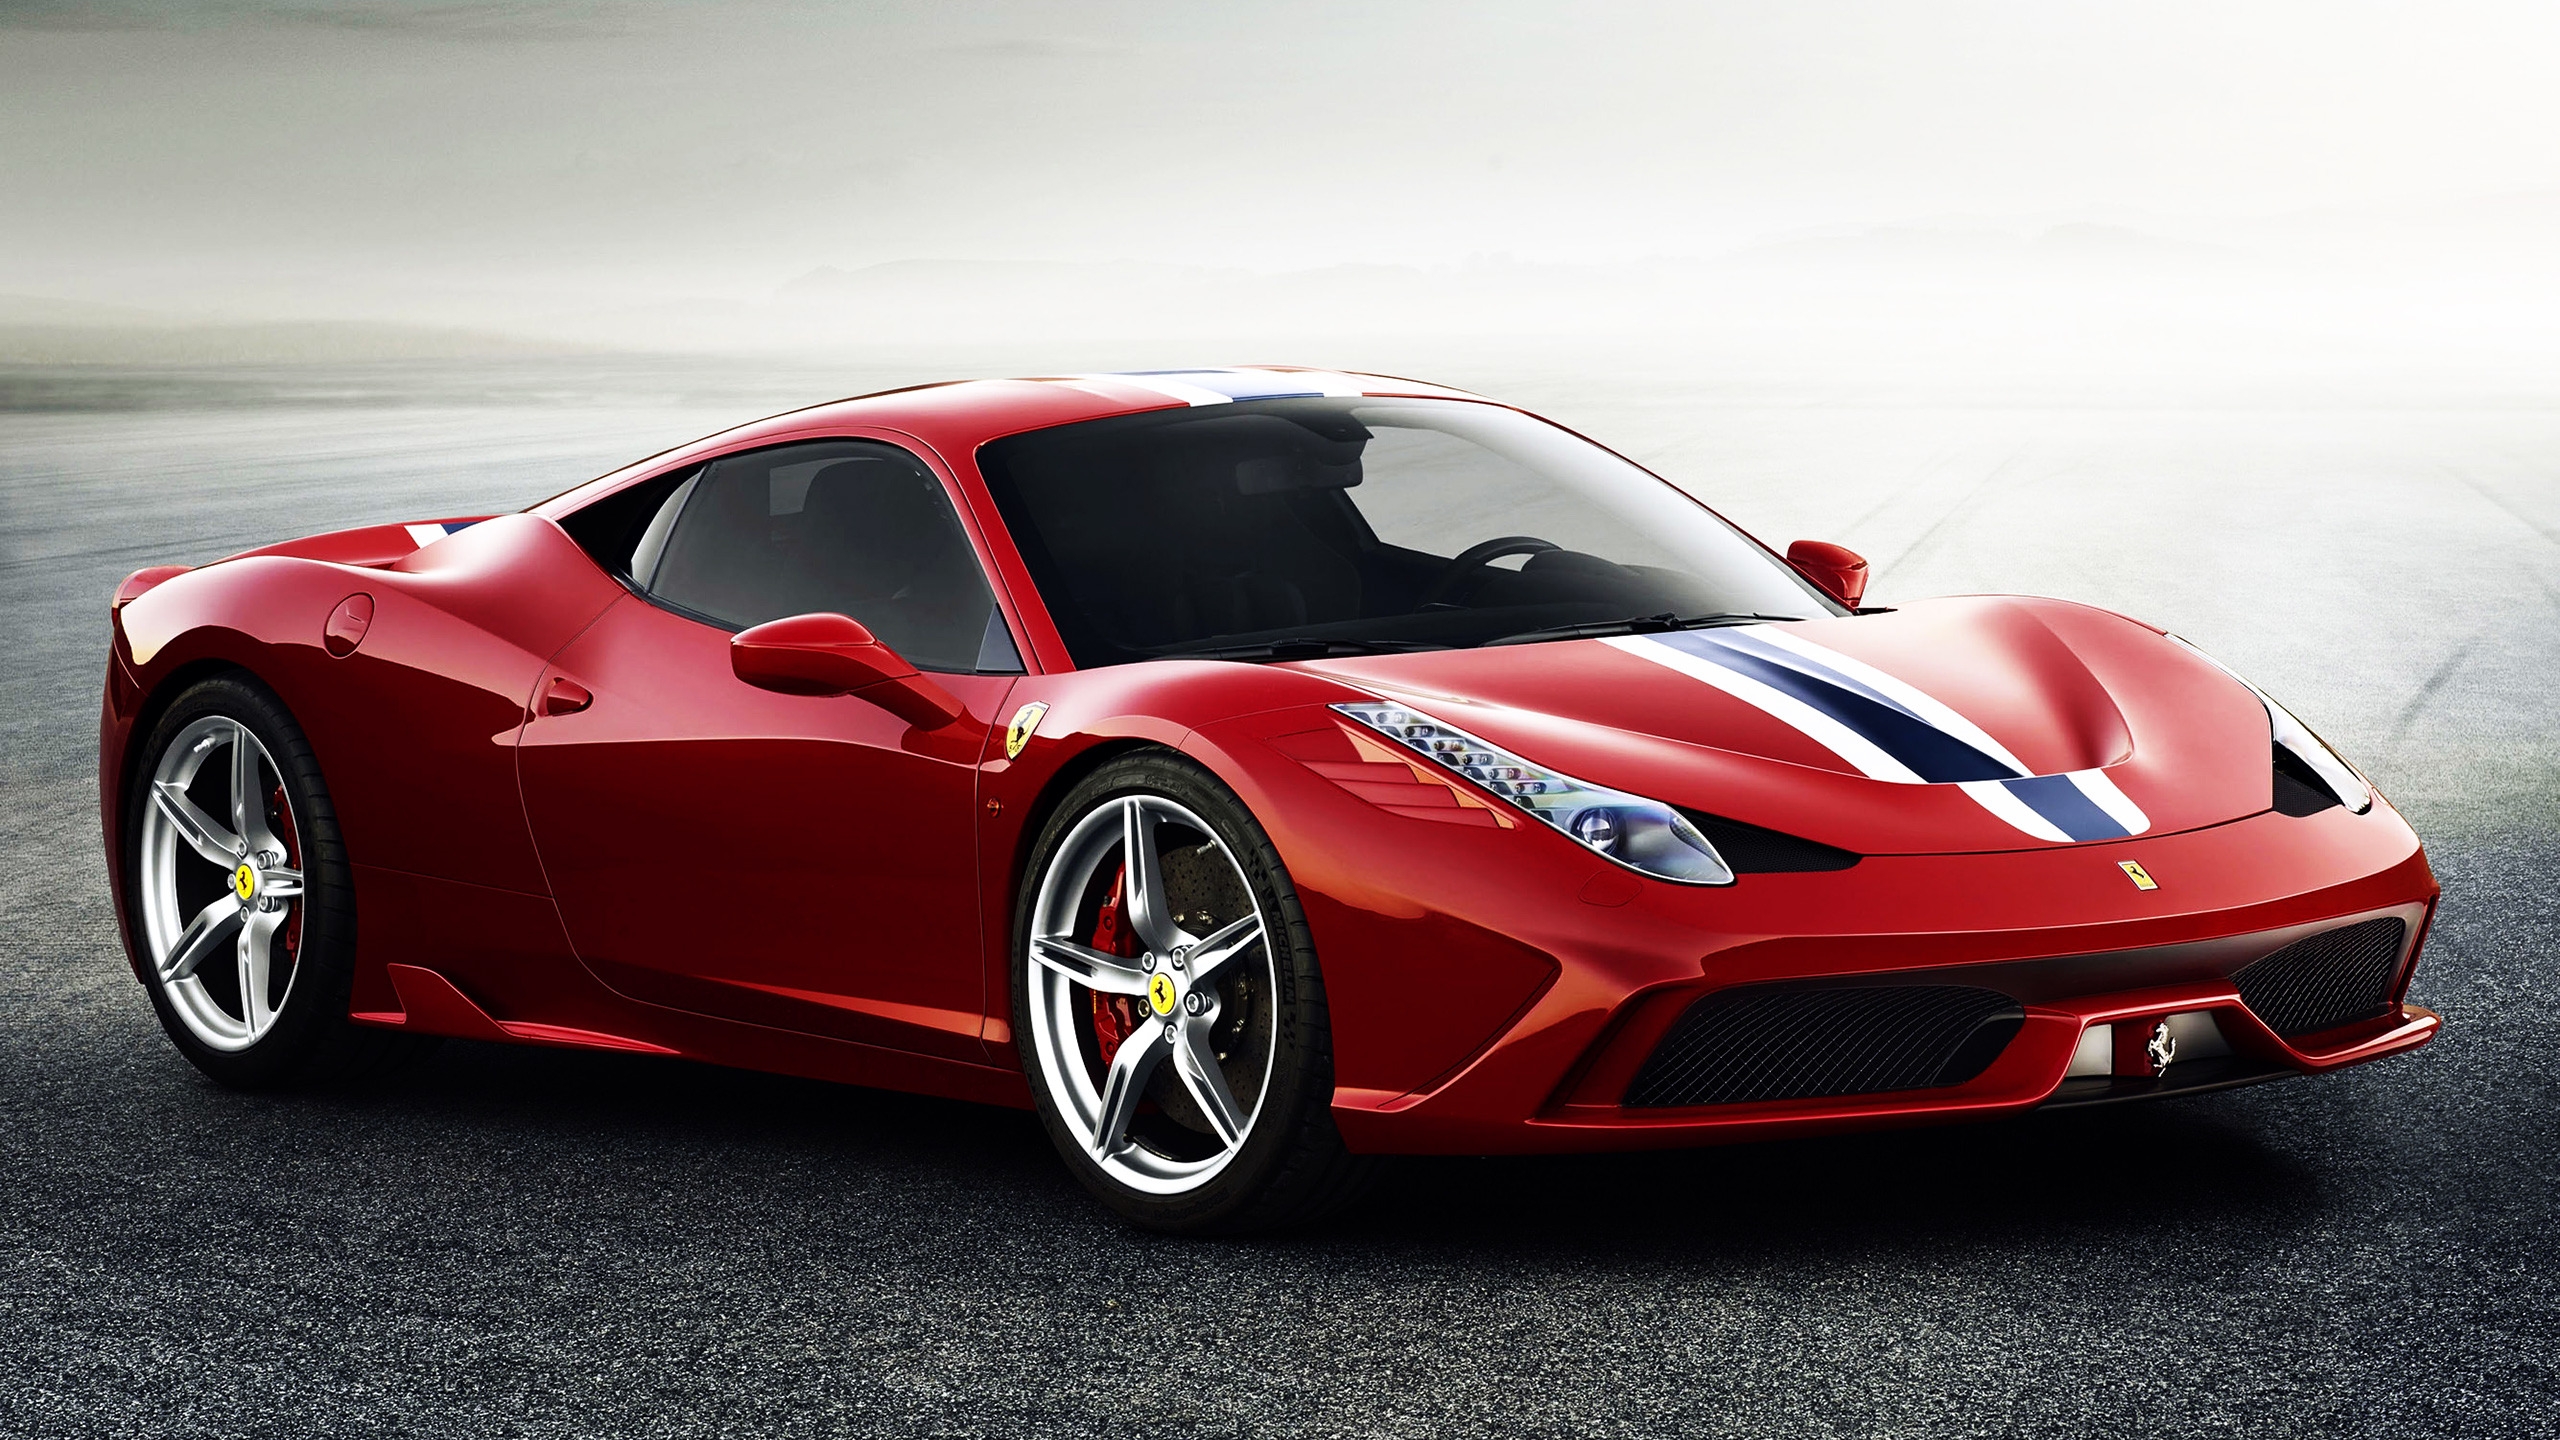 Ferrari 458 Speciale for 2560x1440 HDTV resolution